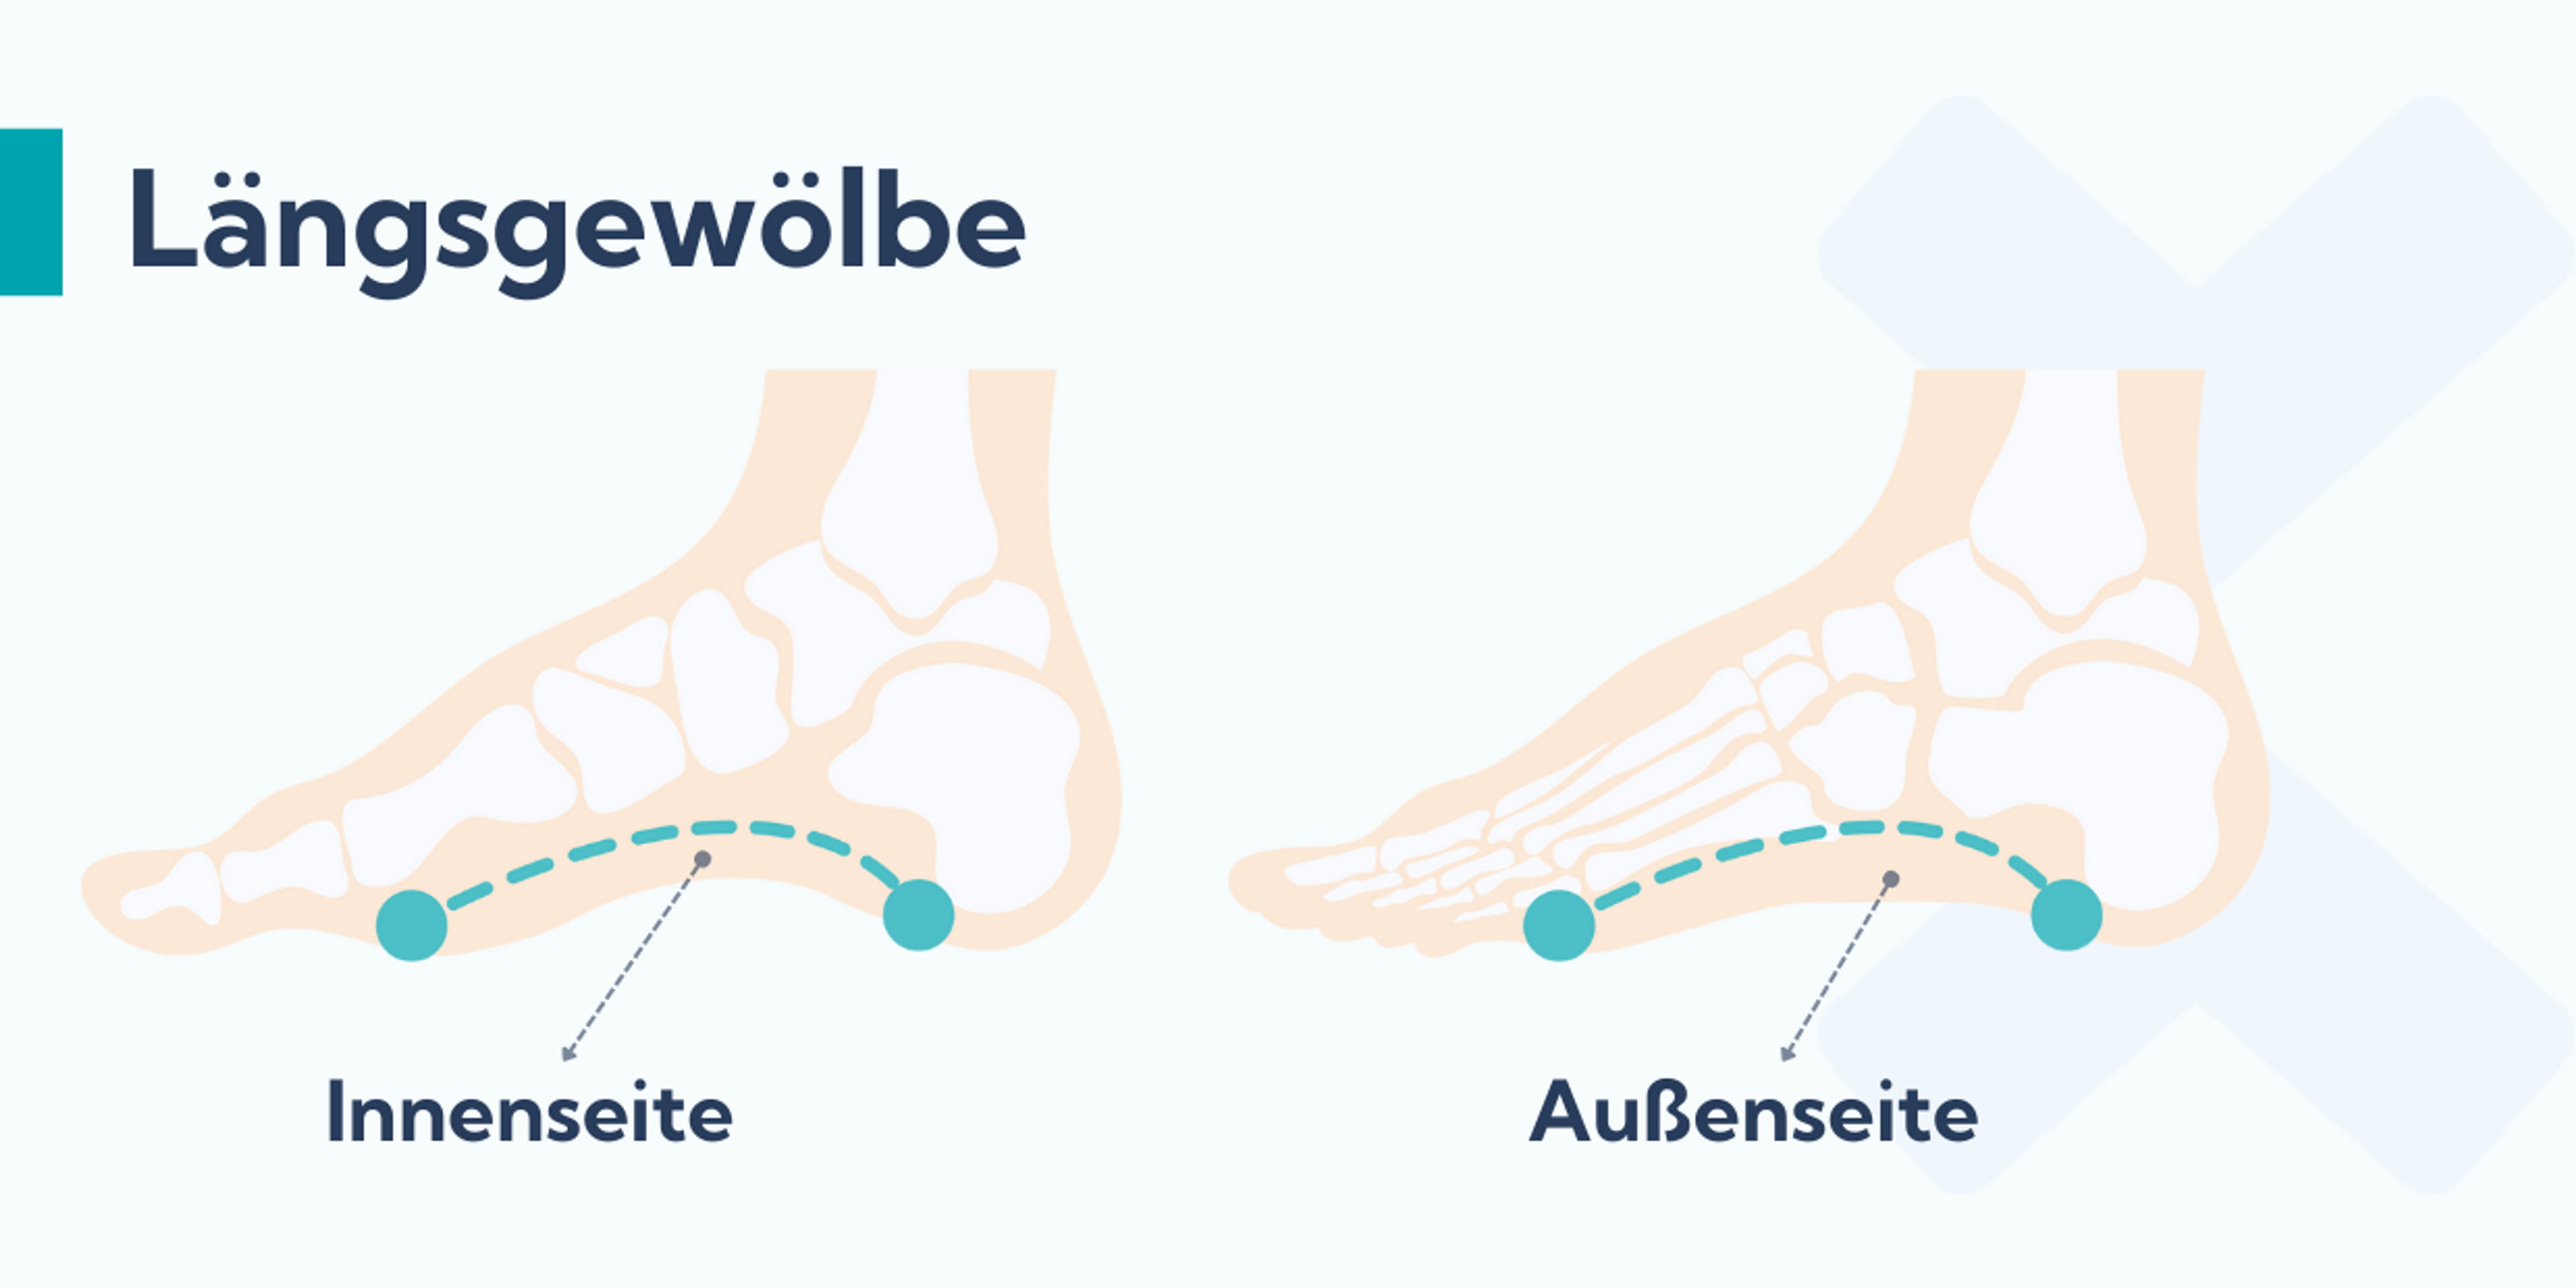 Das äußere Längsgewölbe verläuft auf der Außenseite des Fußes, das innere Längsgewölbe auf der Innenseite des Fußes. Patienten mit Schienbeinkantensyndrom verwenden Einlagen, um diese Fußbögen zu stützen.